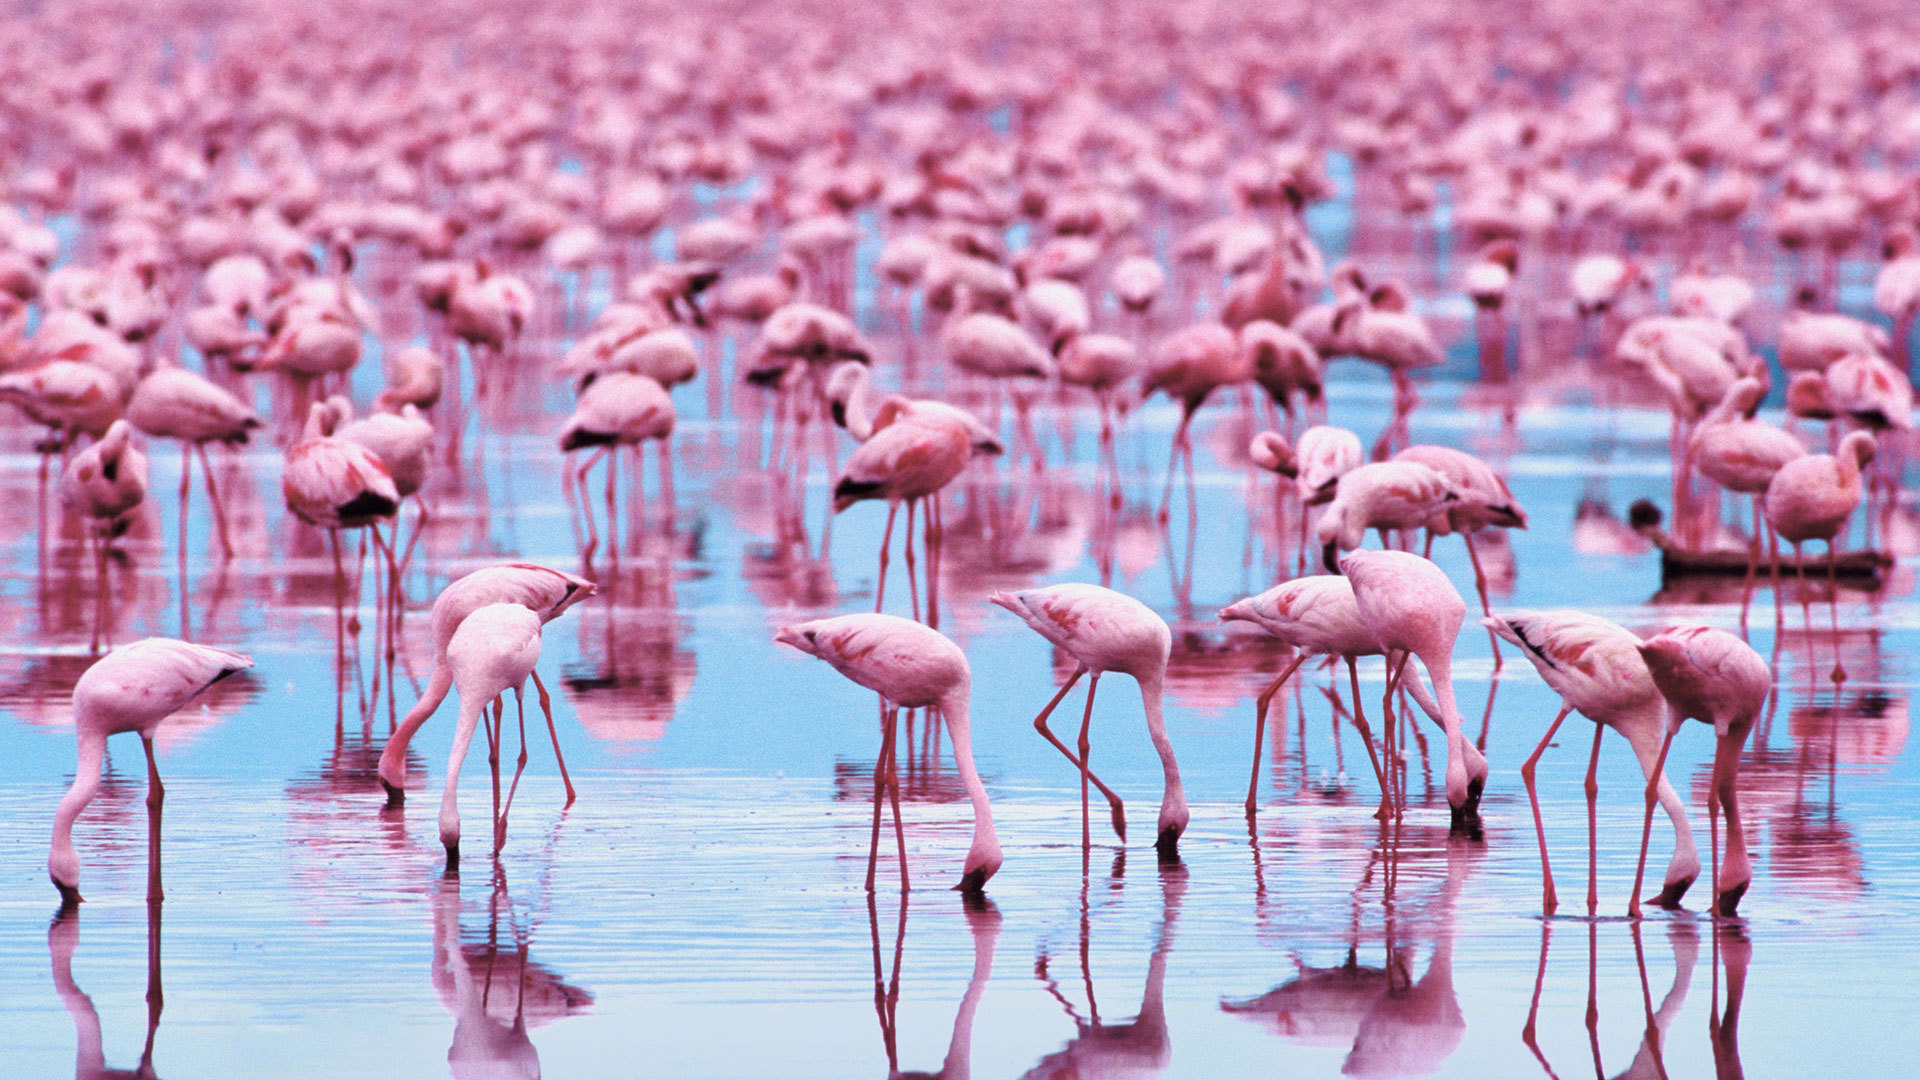 Flamingo 1920 x 1080 HD Wallpaper